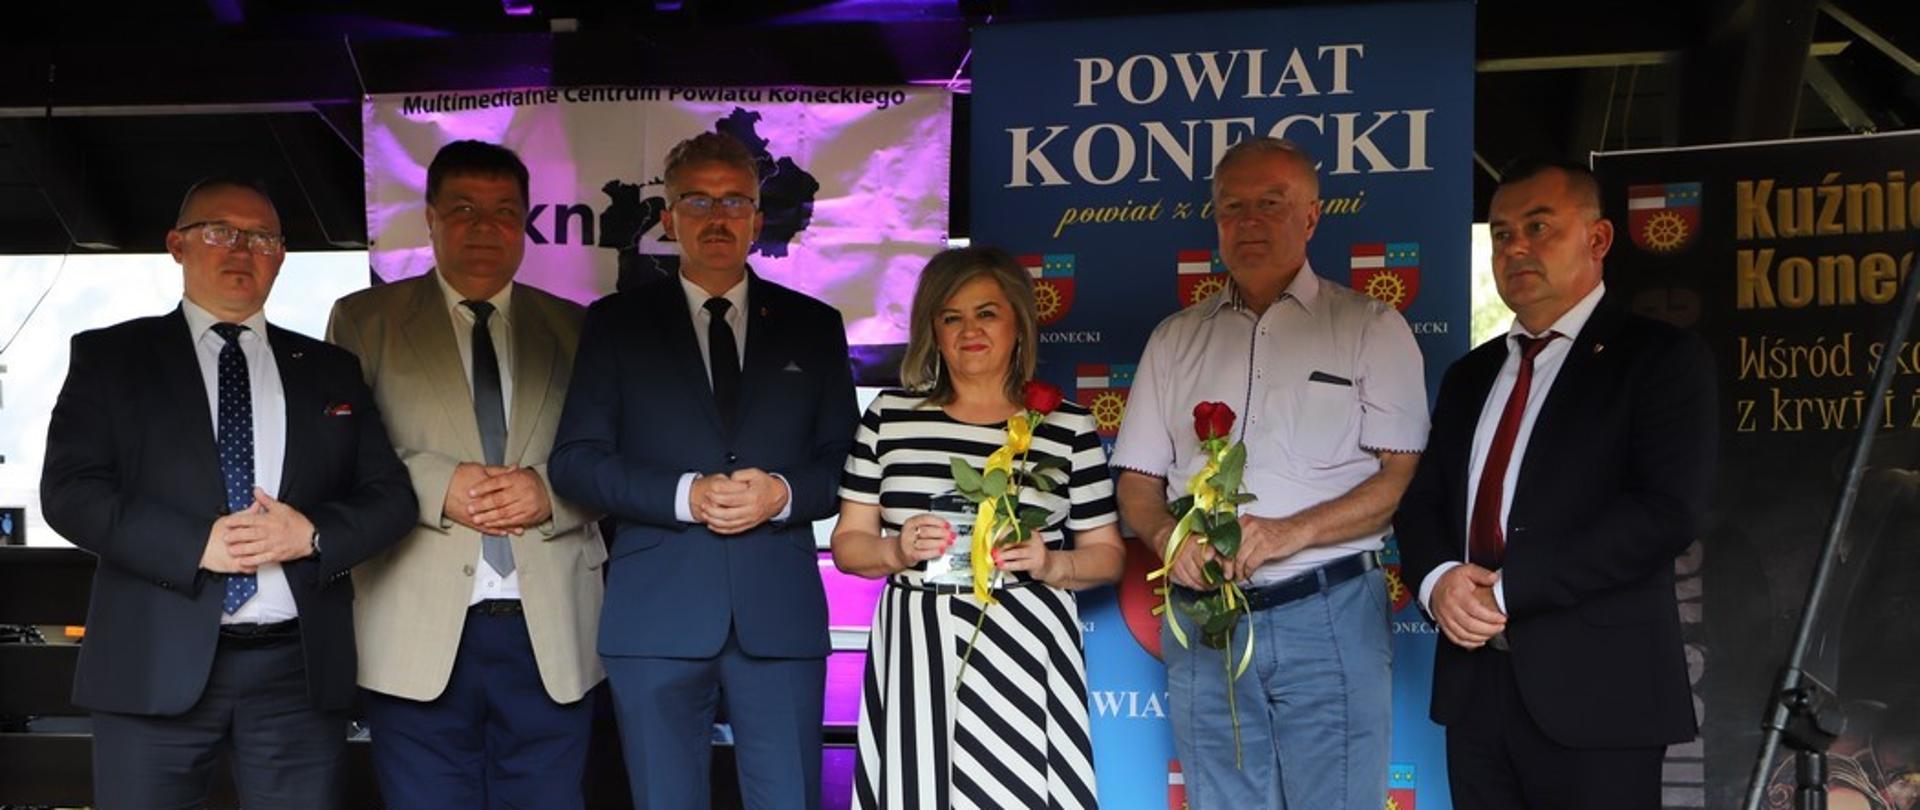 Laureaci nagród powiatowych „Kuźnice Koneckie 2022”